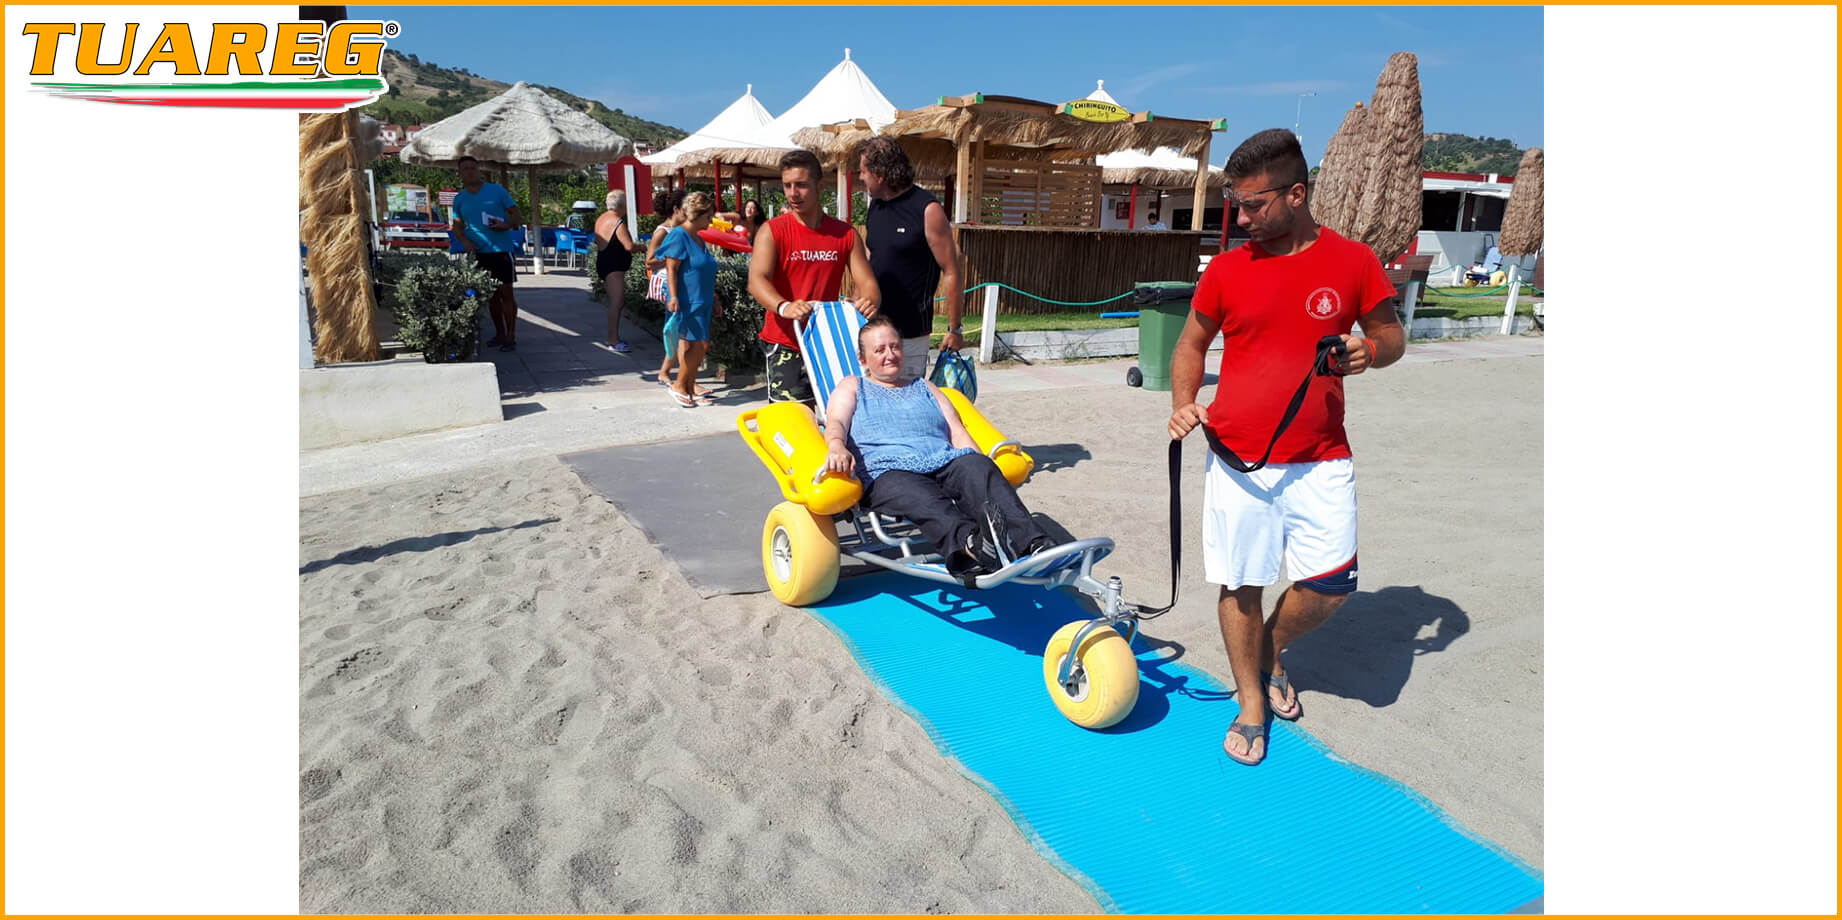 Sedia Galleggiante per Disabili da Spiaggia - Tuareg Access - Prodotto/Accessorio per l'Accessibilità delle Spiagge